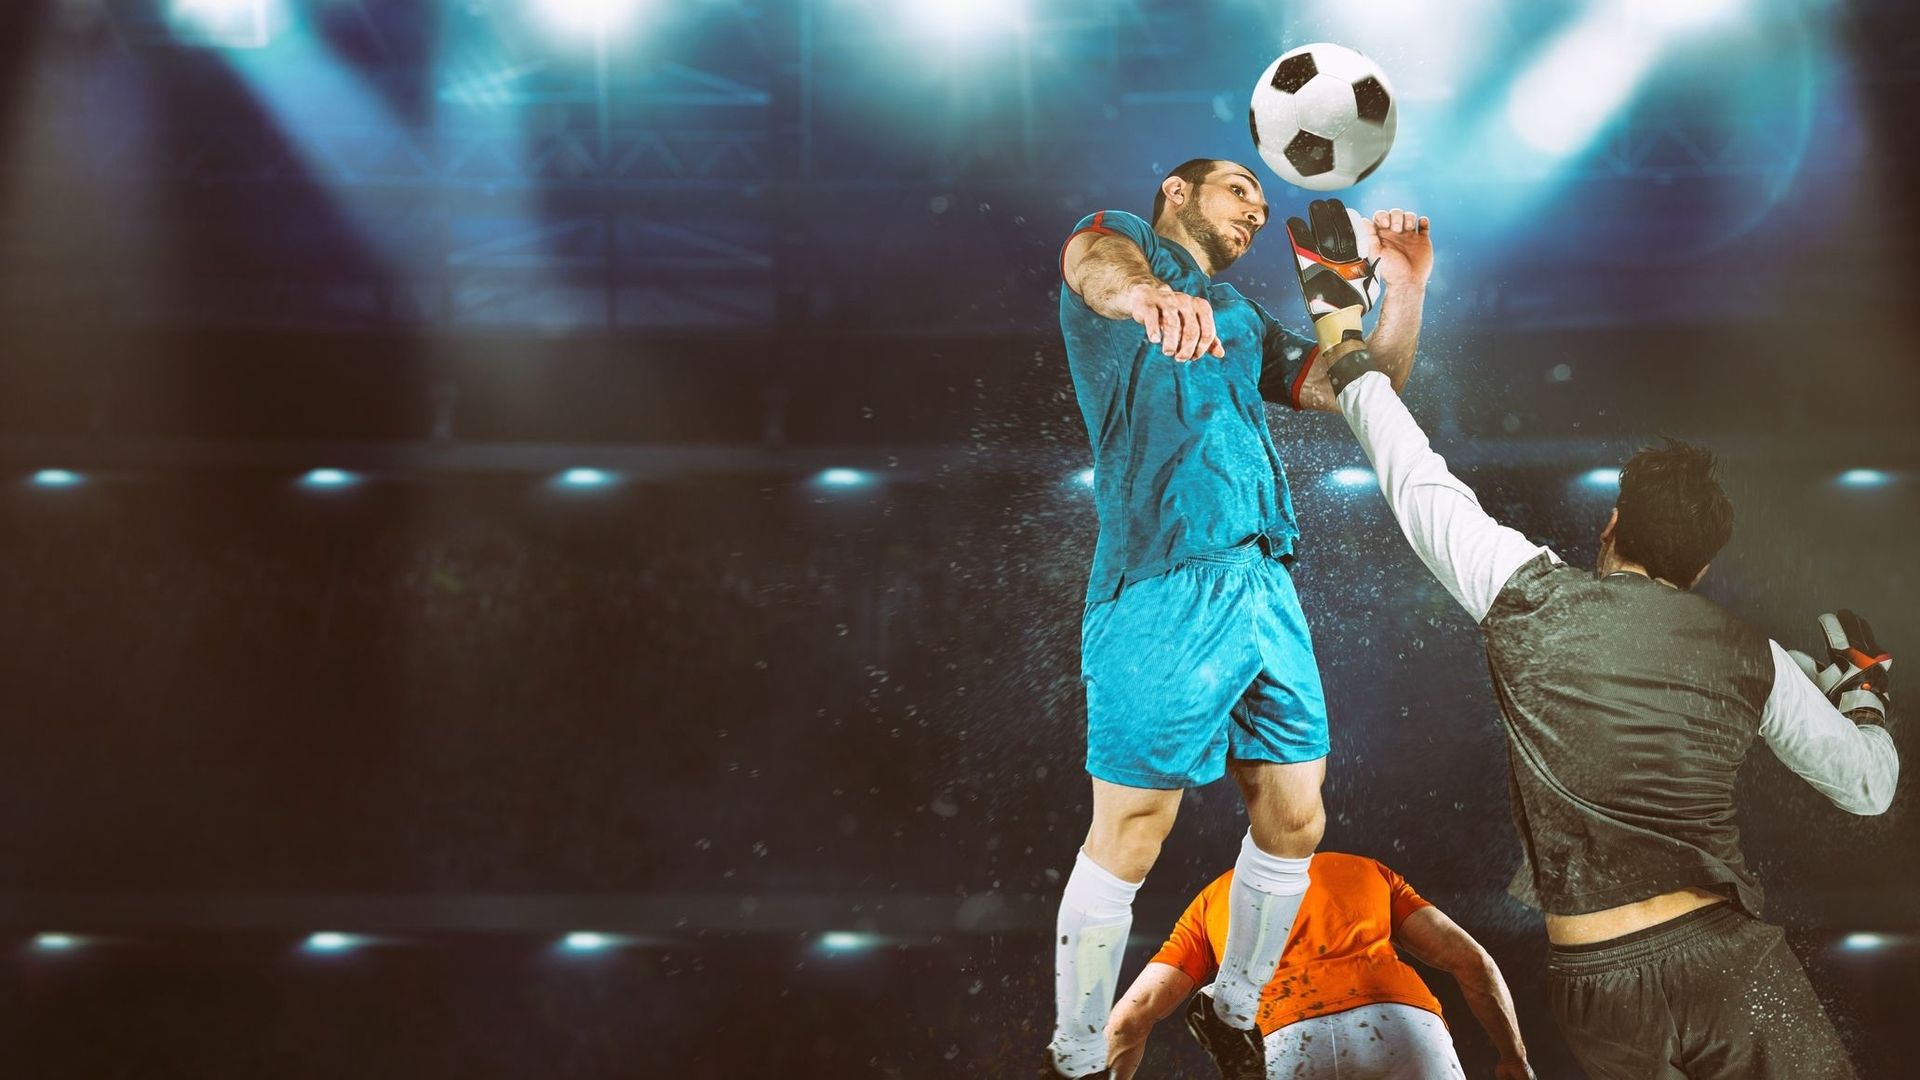 Les joueurs de football ont un risque accru de démence, selon une étude suédoise.